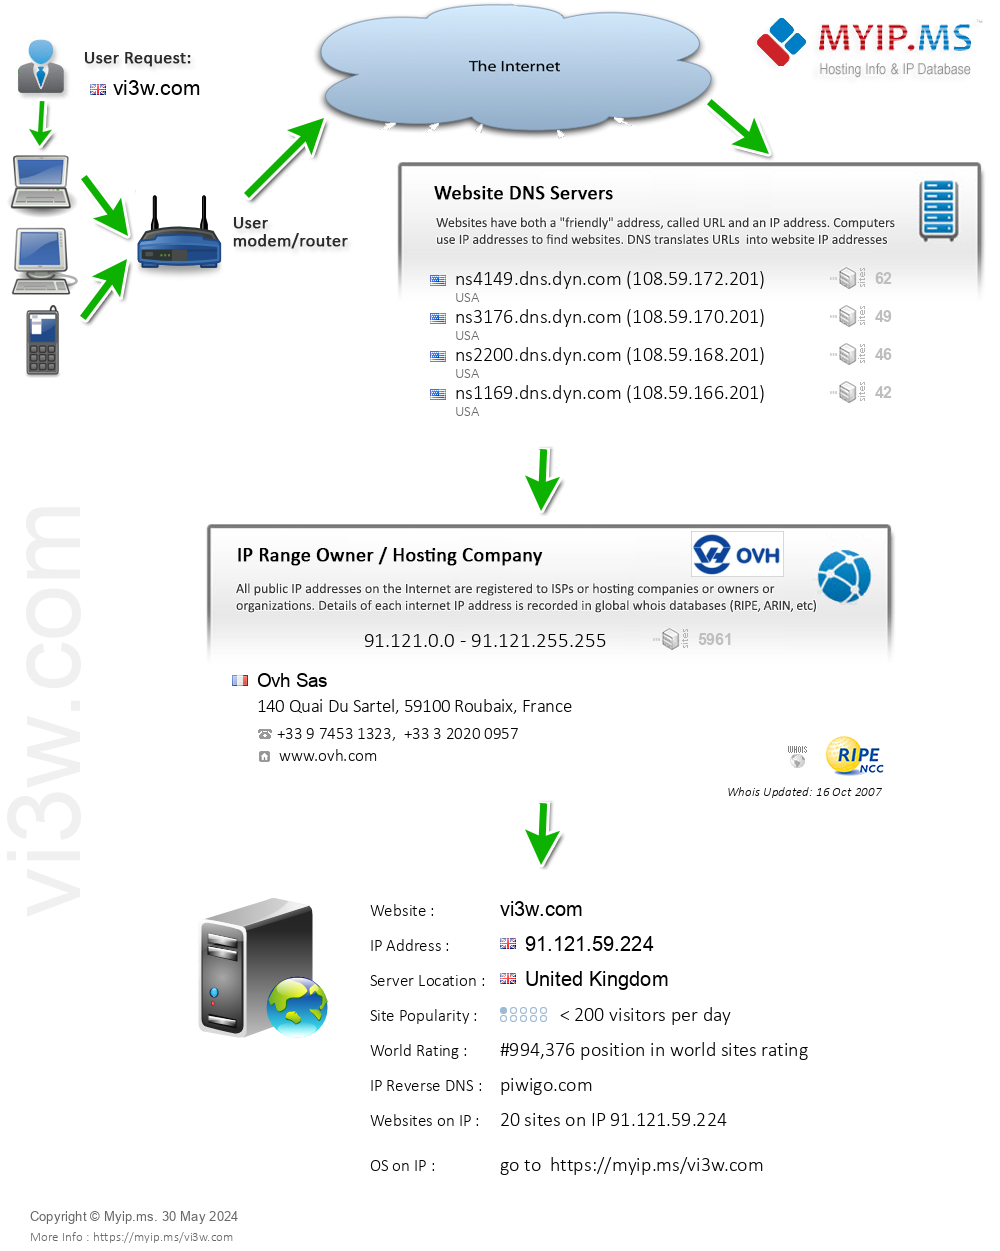 Vi3w.com - Website Hosting Visual IP Diagram